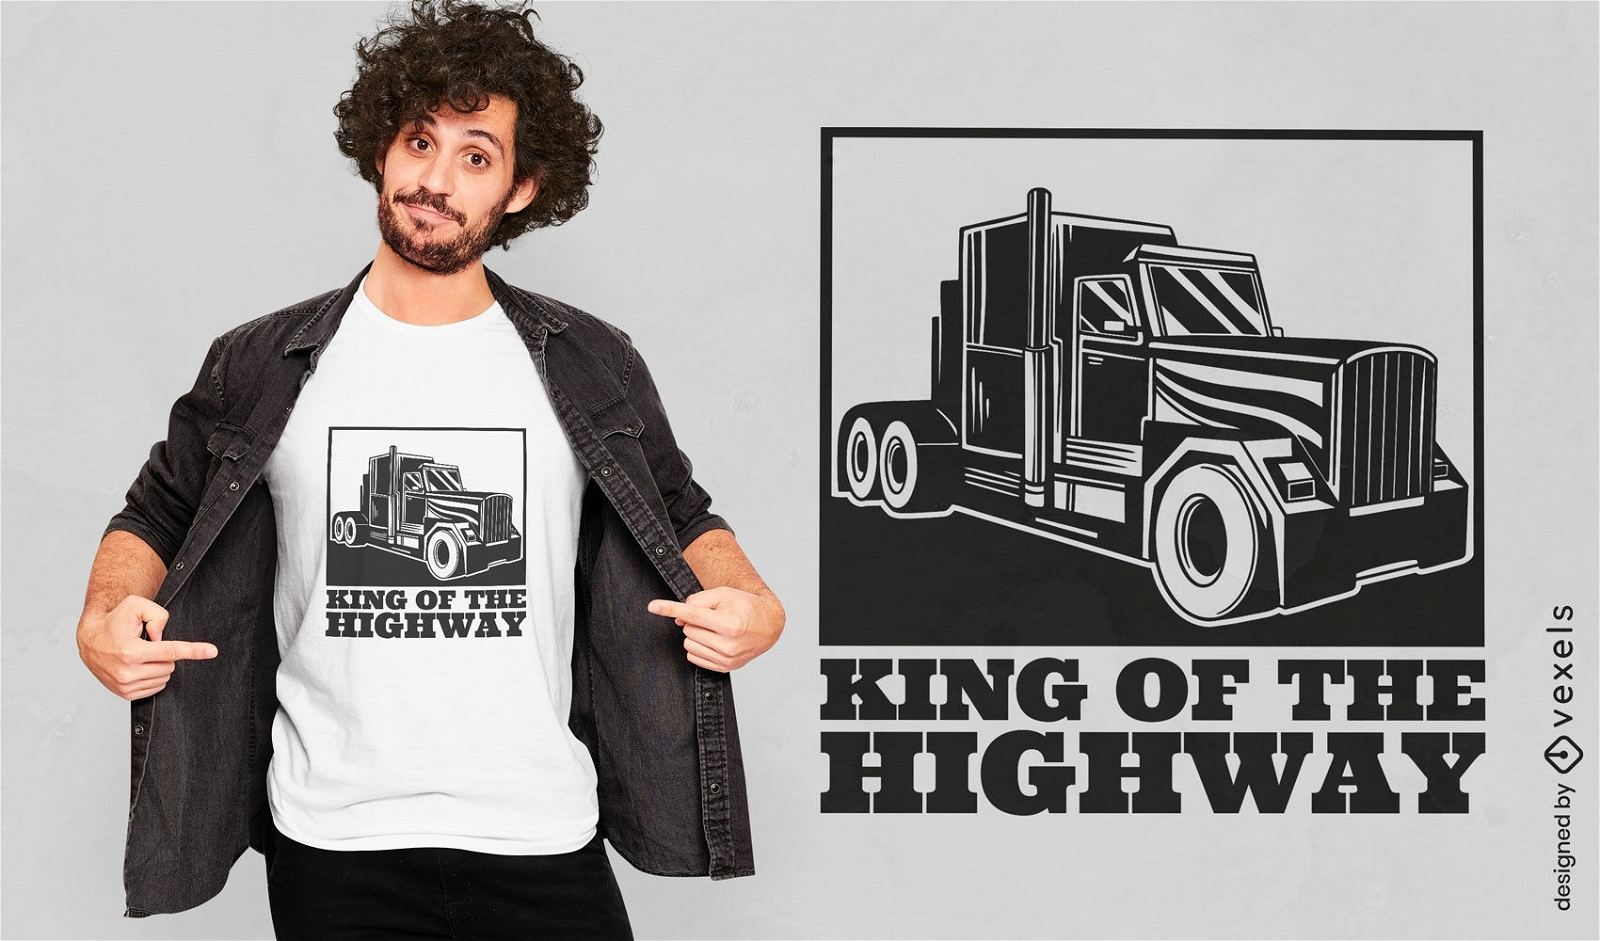 Dise?o de camiseta de camionero rey de la carretera